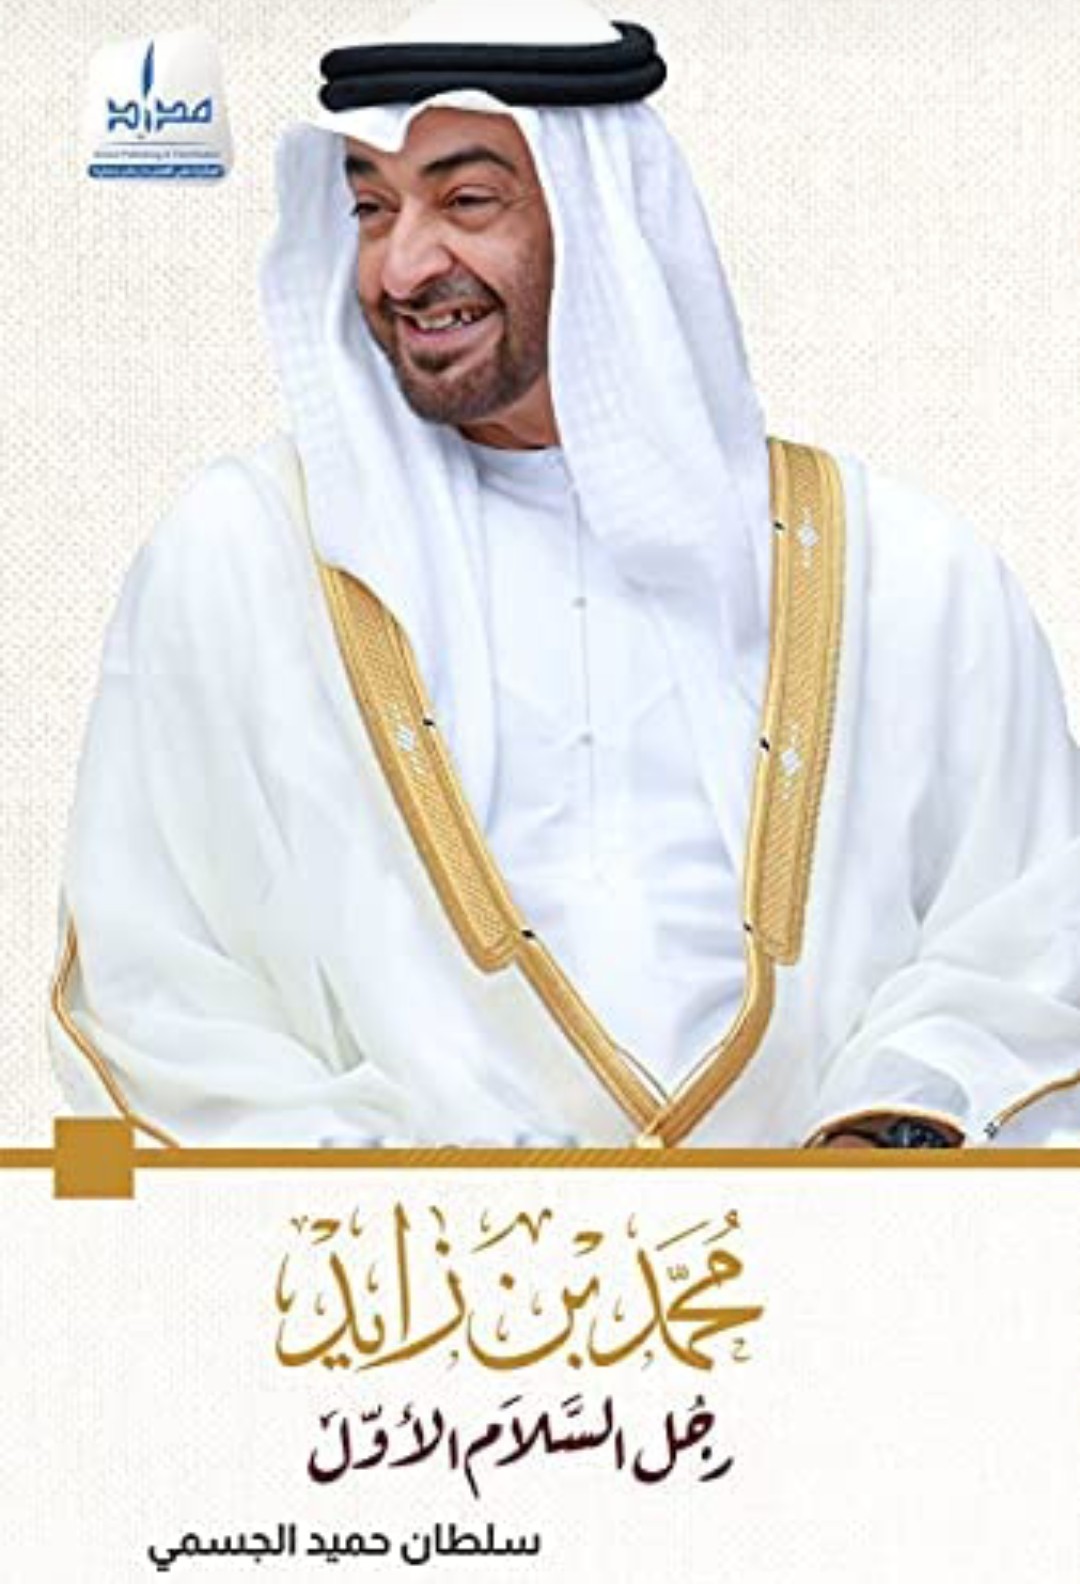 الكاتب الإماراتي سلطان حميد الجسمي يؤرخ لسيرة محمد بن زايد رجل السلام الأول